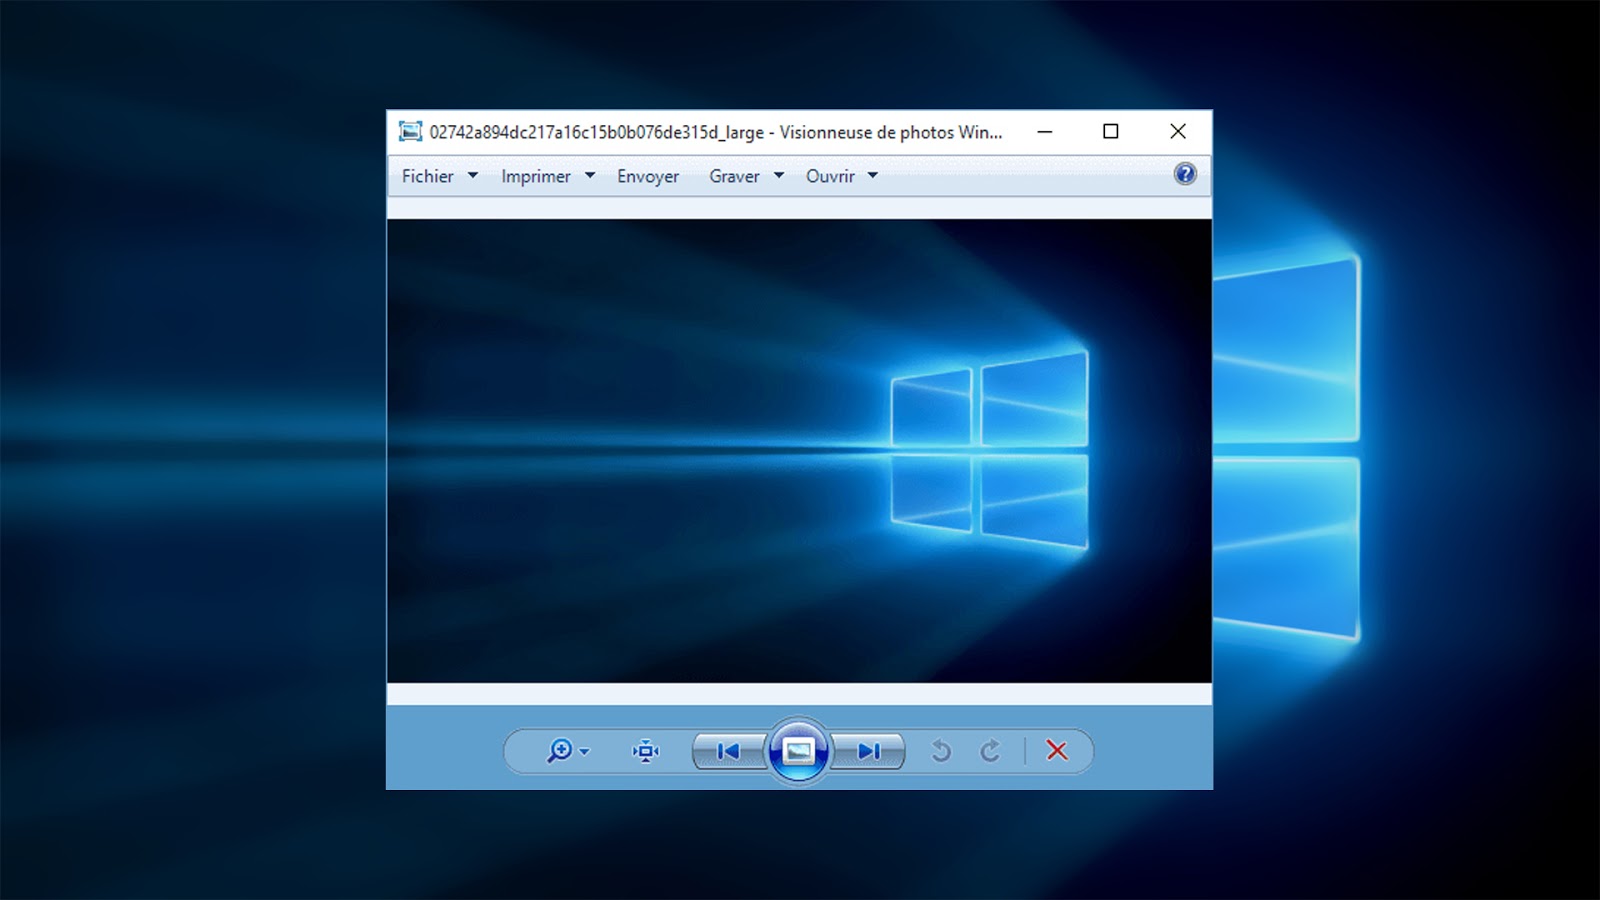 windows photo viewer latest version download